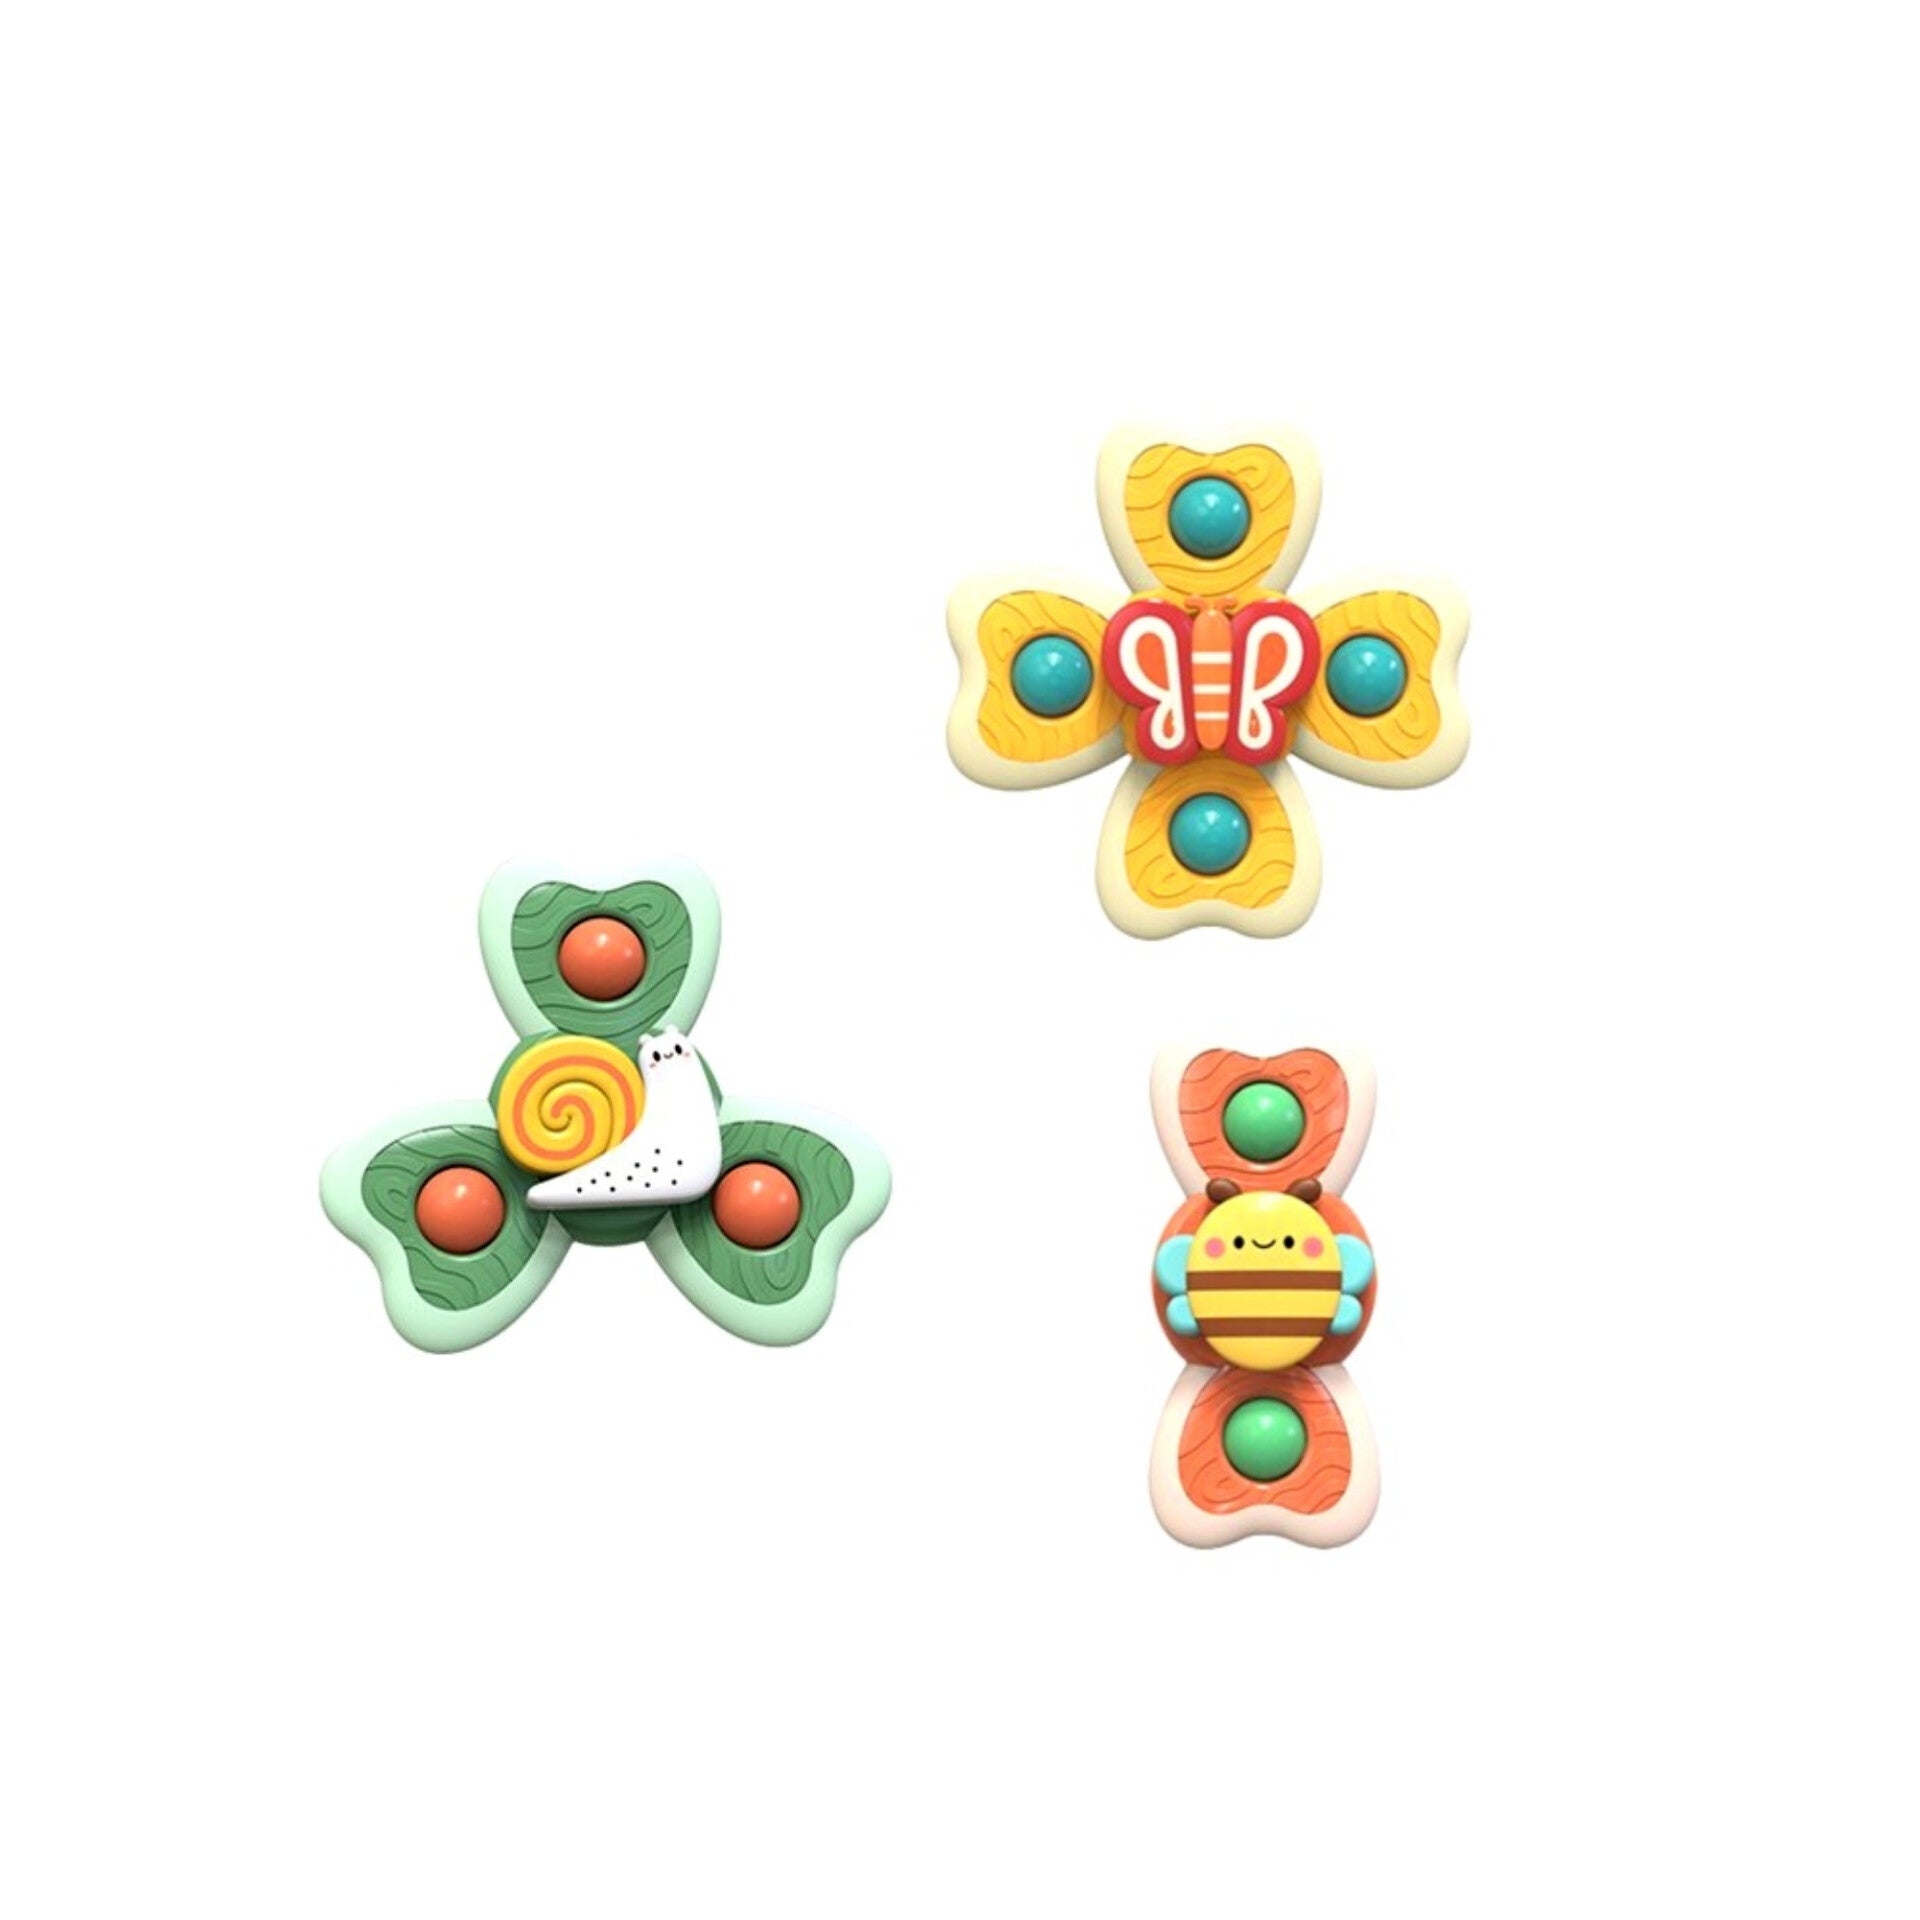 3 piezas de juguete giratorio con ventosa giratoria de colores para insectos